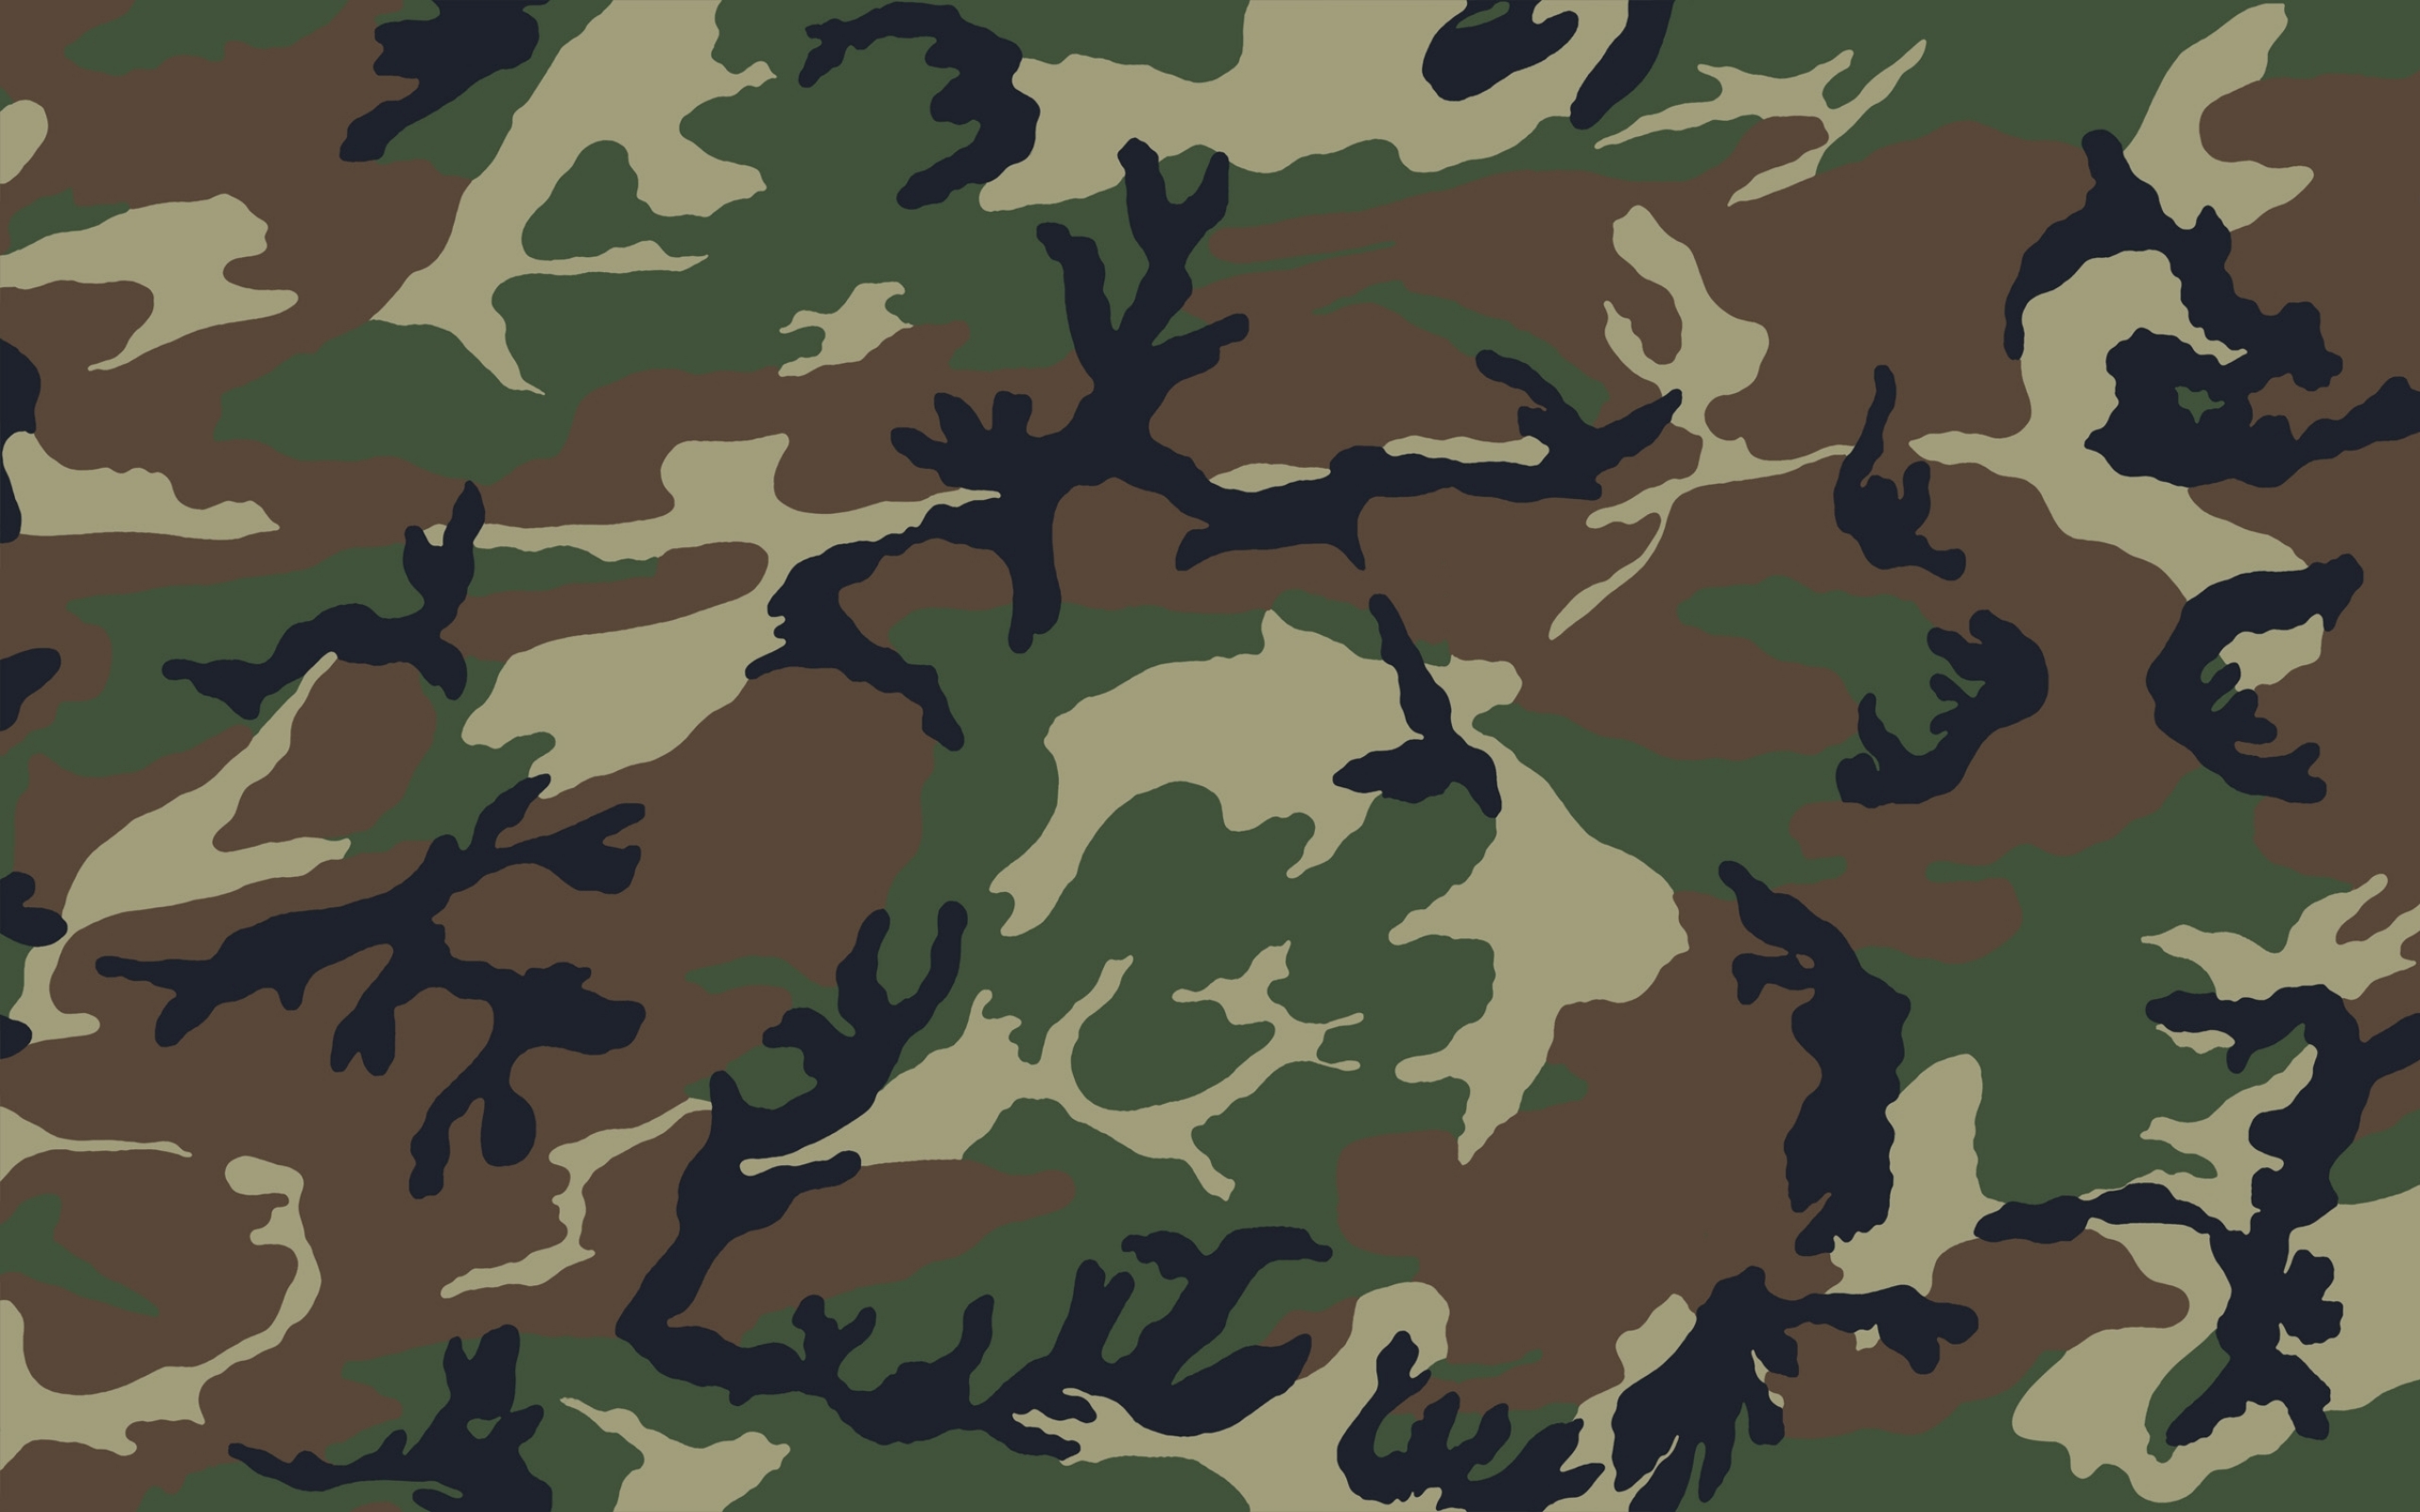  DesignDigitalcamouflage 3000x1500 wallpaper 17468download 2560x1600